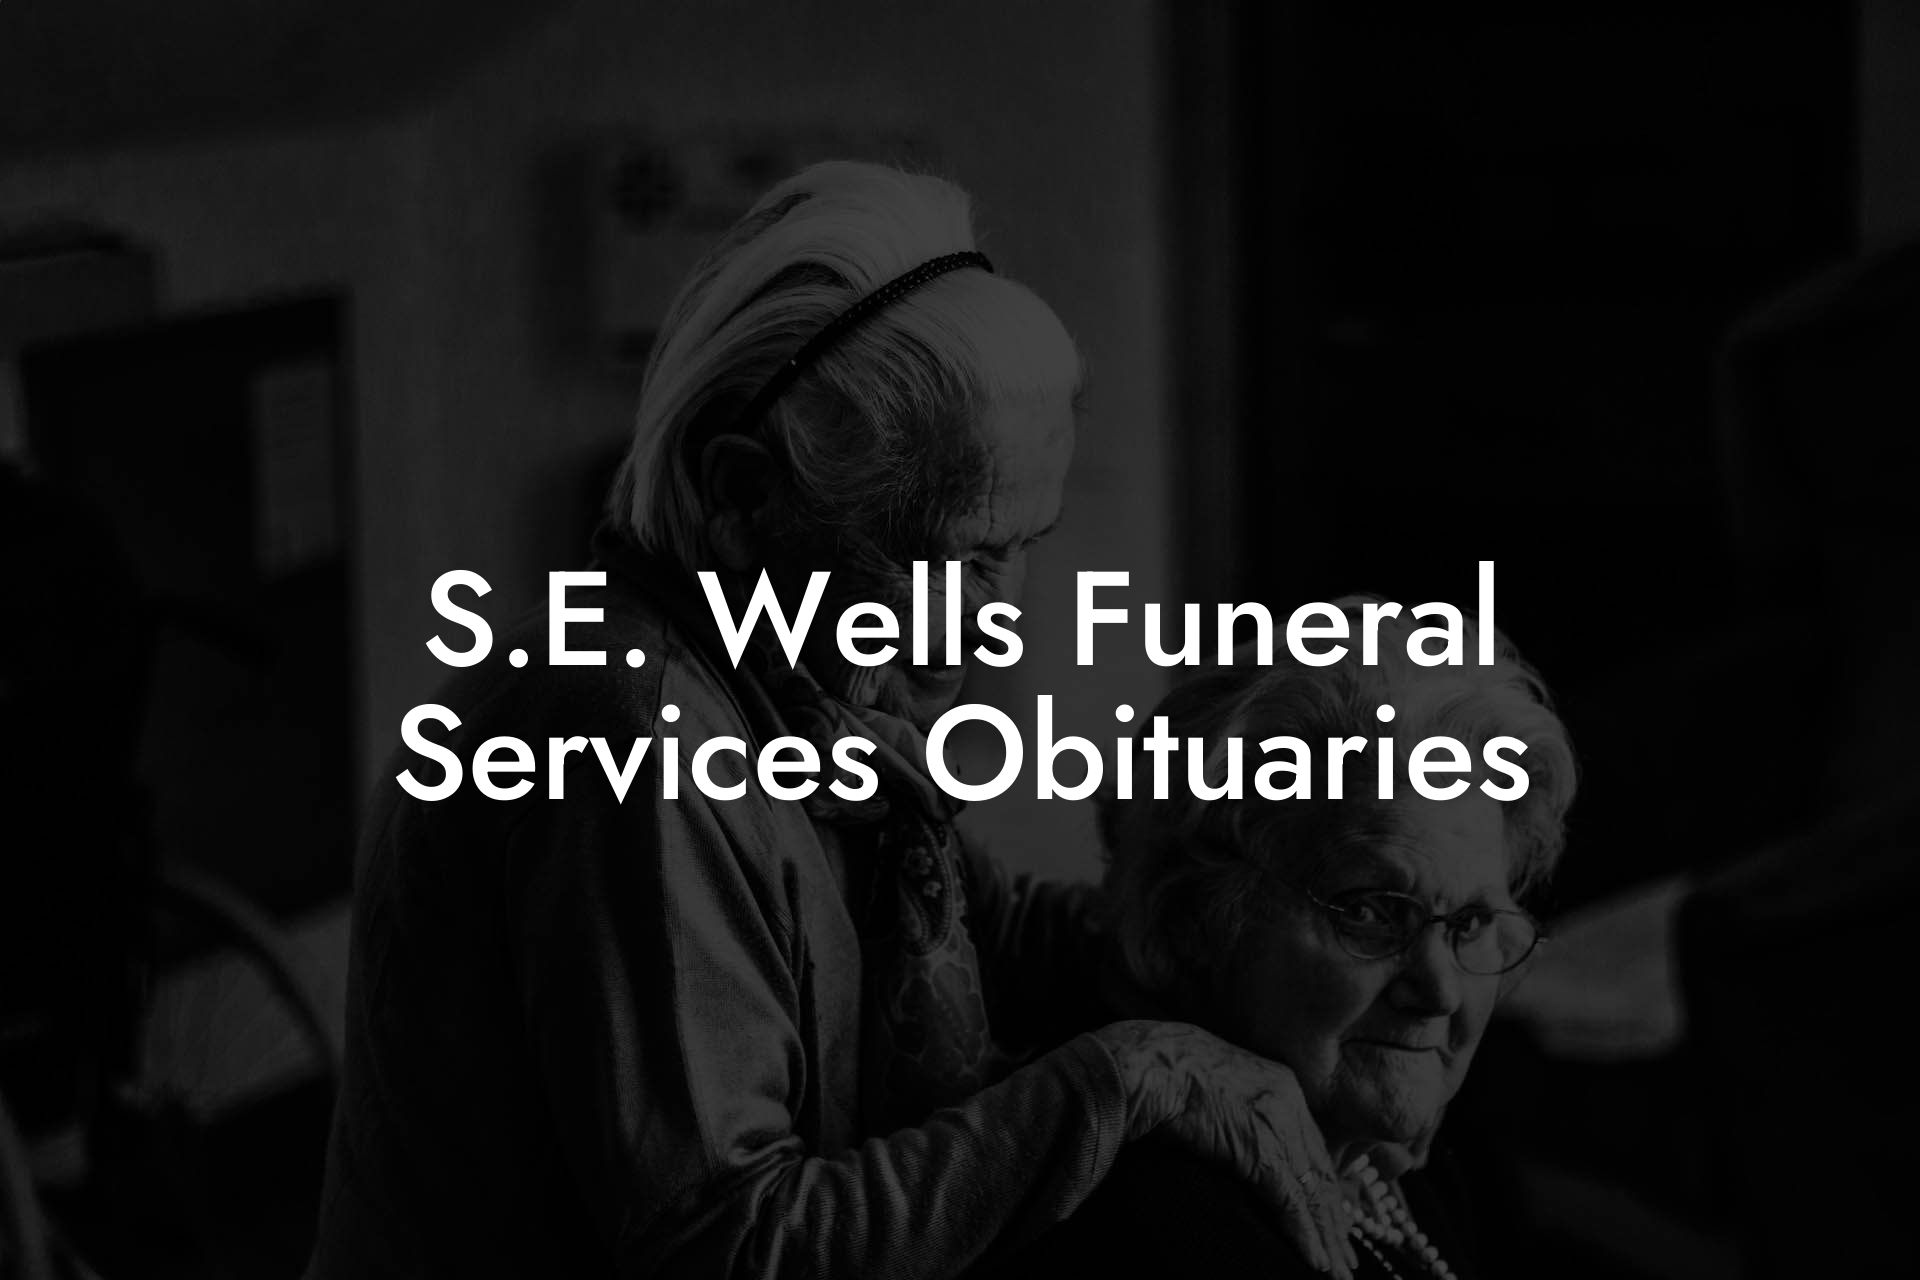 S.E. Wells Funeral Services Obituaries